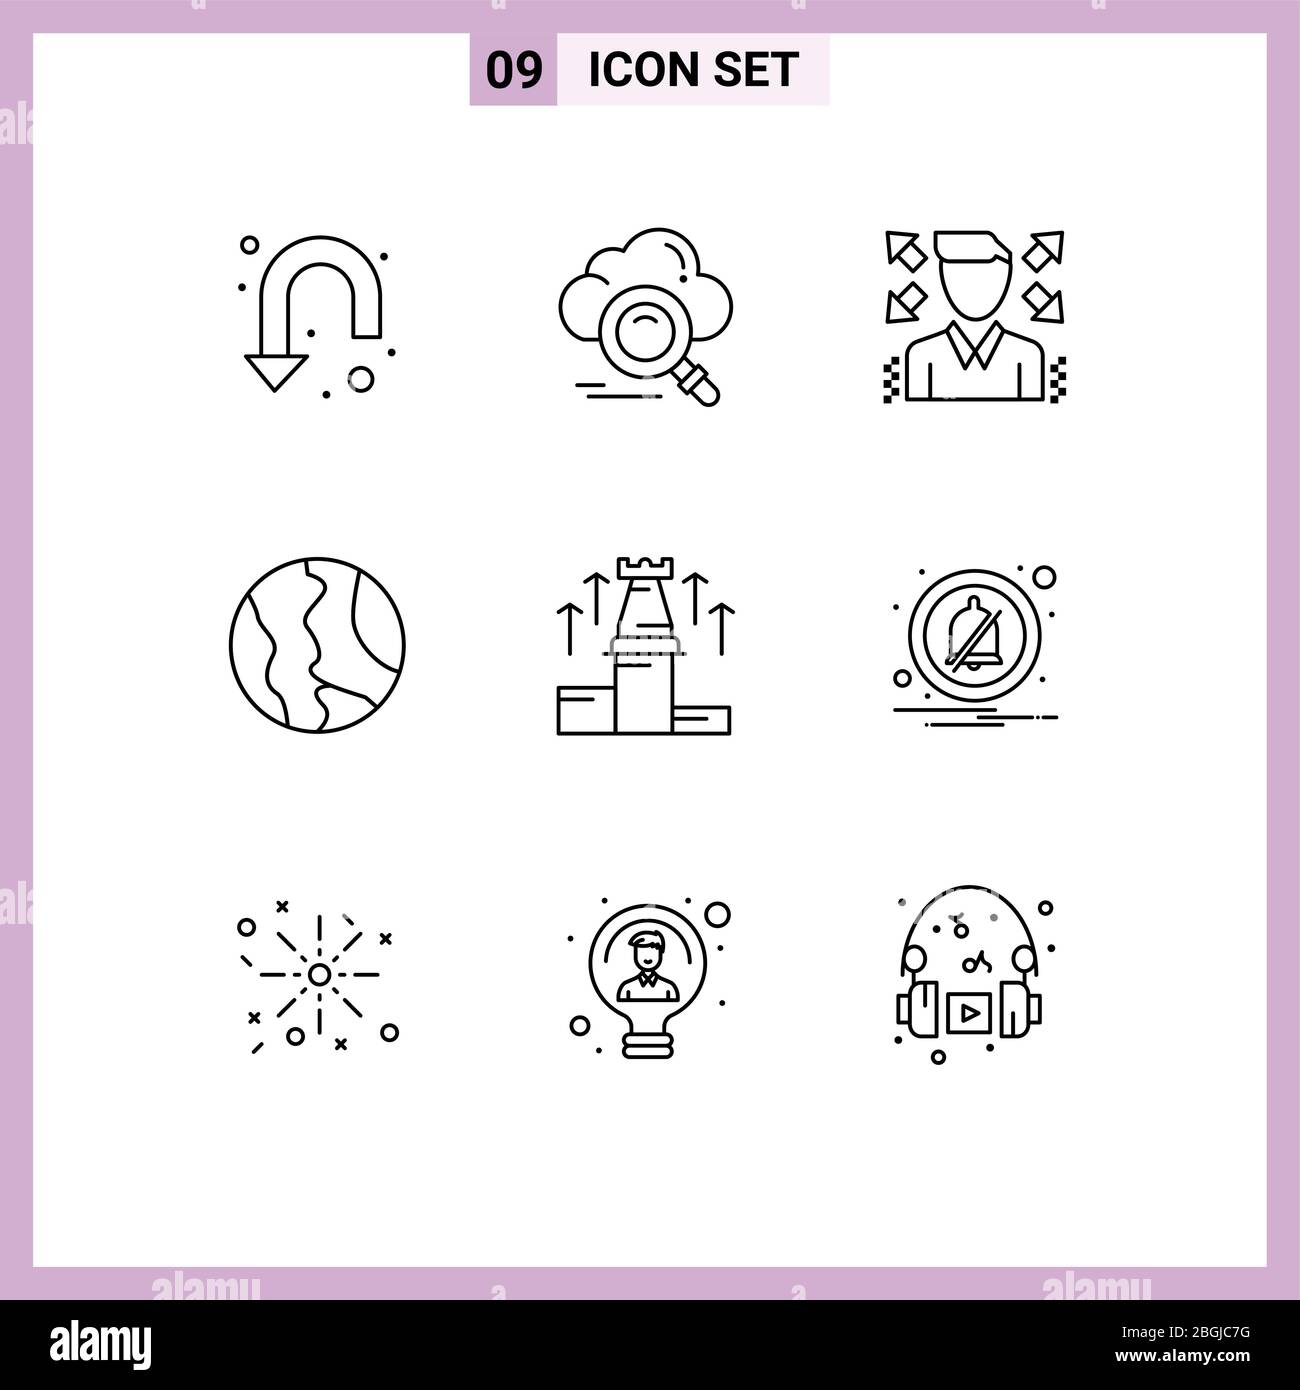 Set di 9 icone moderne dell'interfaccia utente simboli per strategia, mondo, accesso, mappa, elementi di progettazione vettoriale modificabili globali Illustrazione Vettoriale